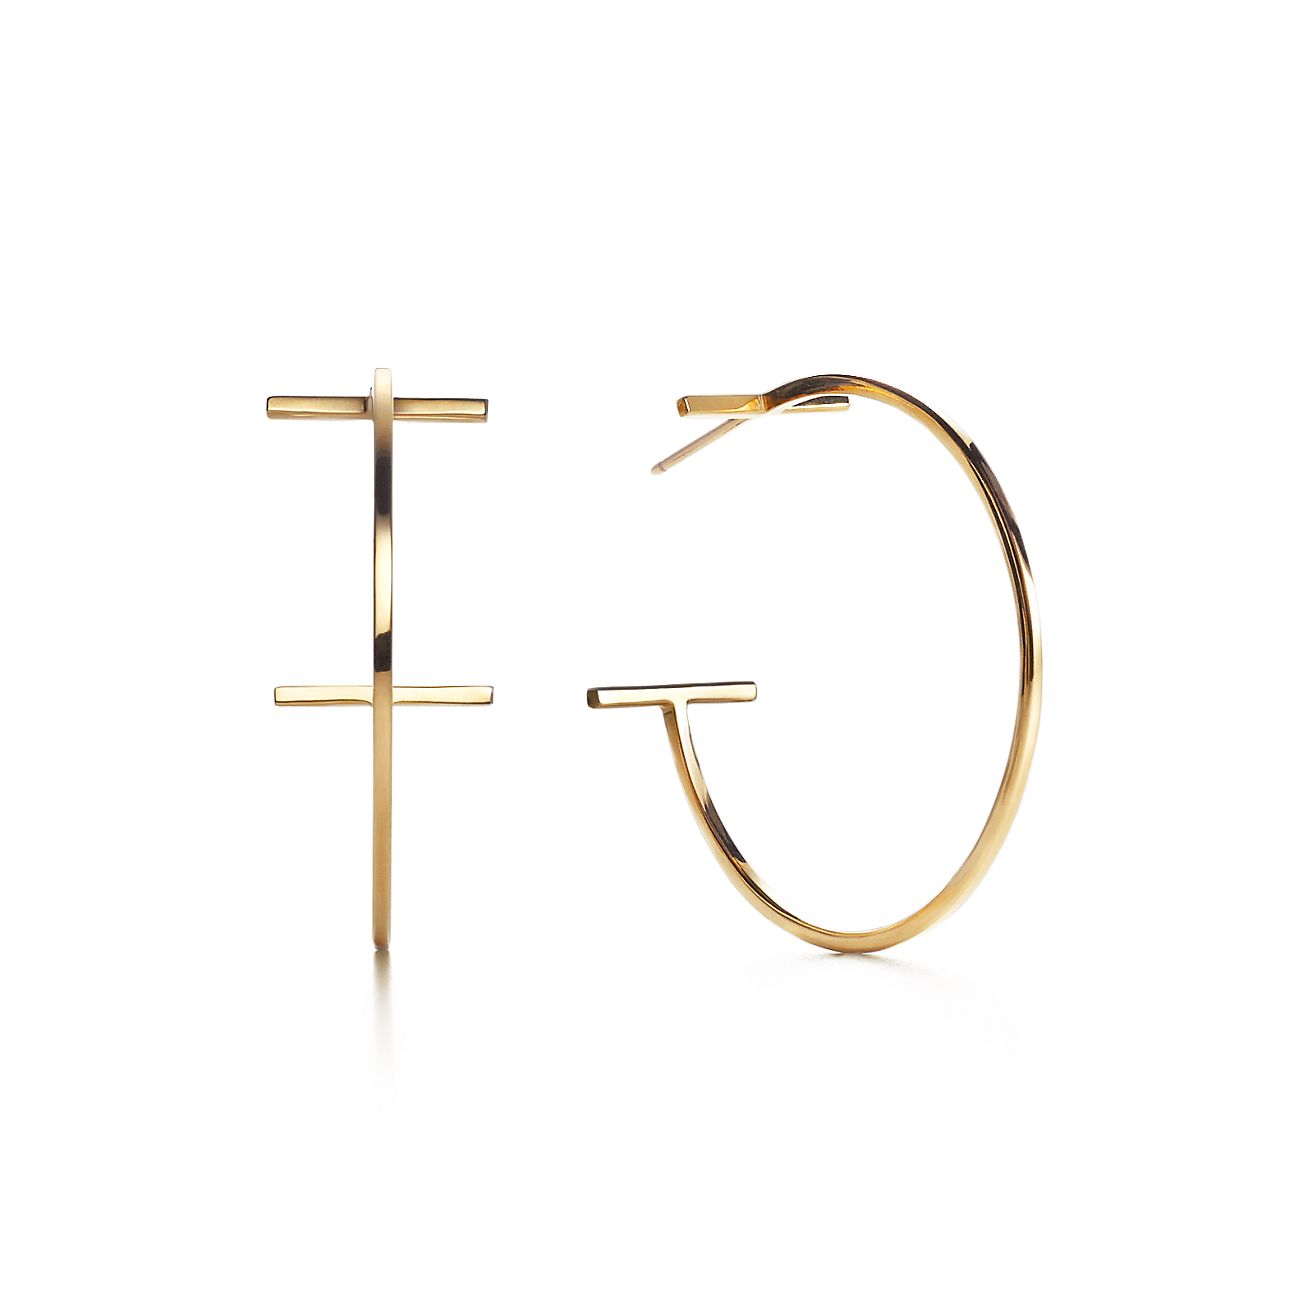 Tiffany T hoop earrings in 18k gold 